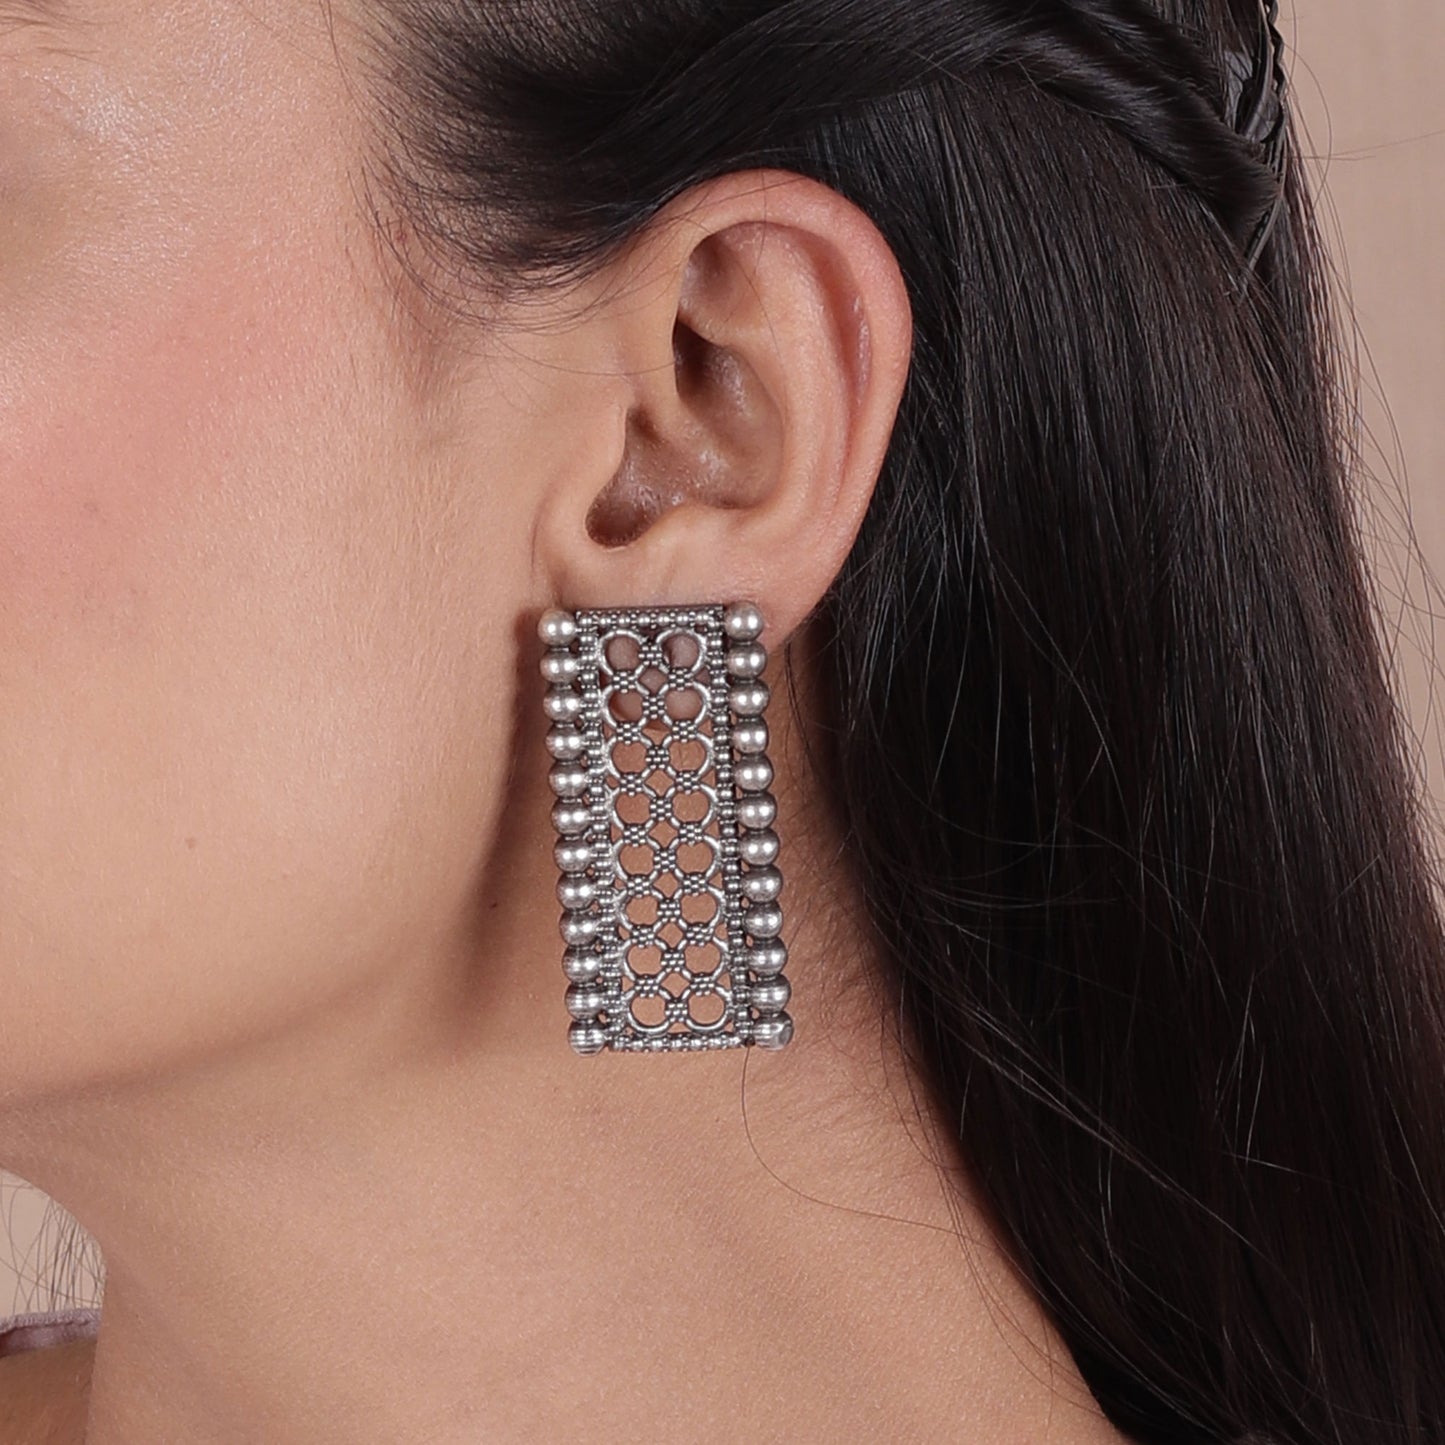 The Pearly Gate Net Earrings